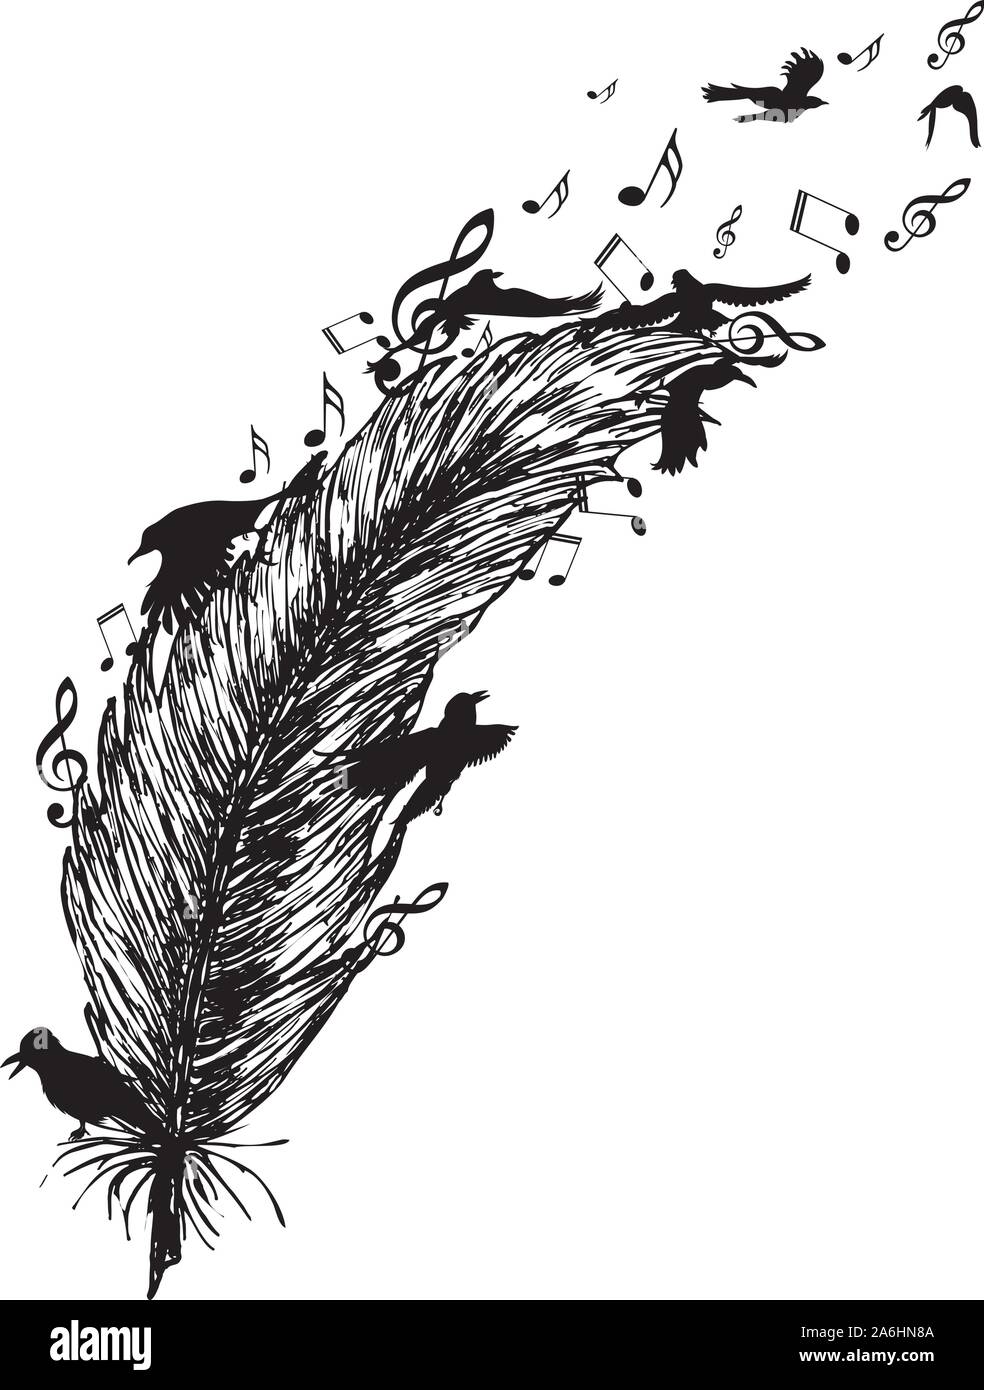 Les oiseaux en plein vol et de plume et notes de musique d'ossature, tatouage dessin en noir et blanc. Illustration de Vecteur